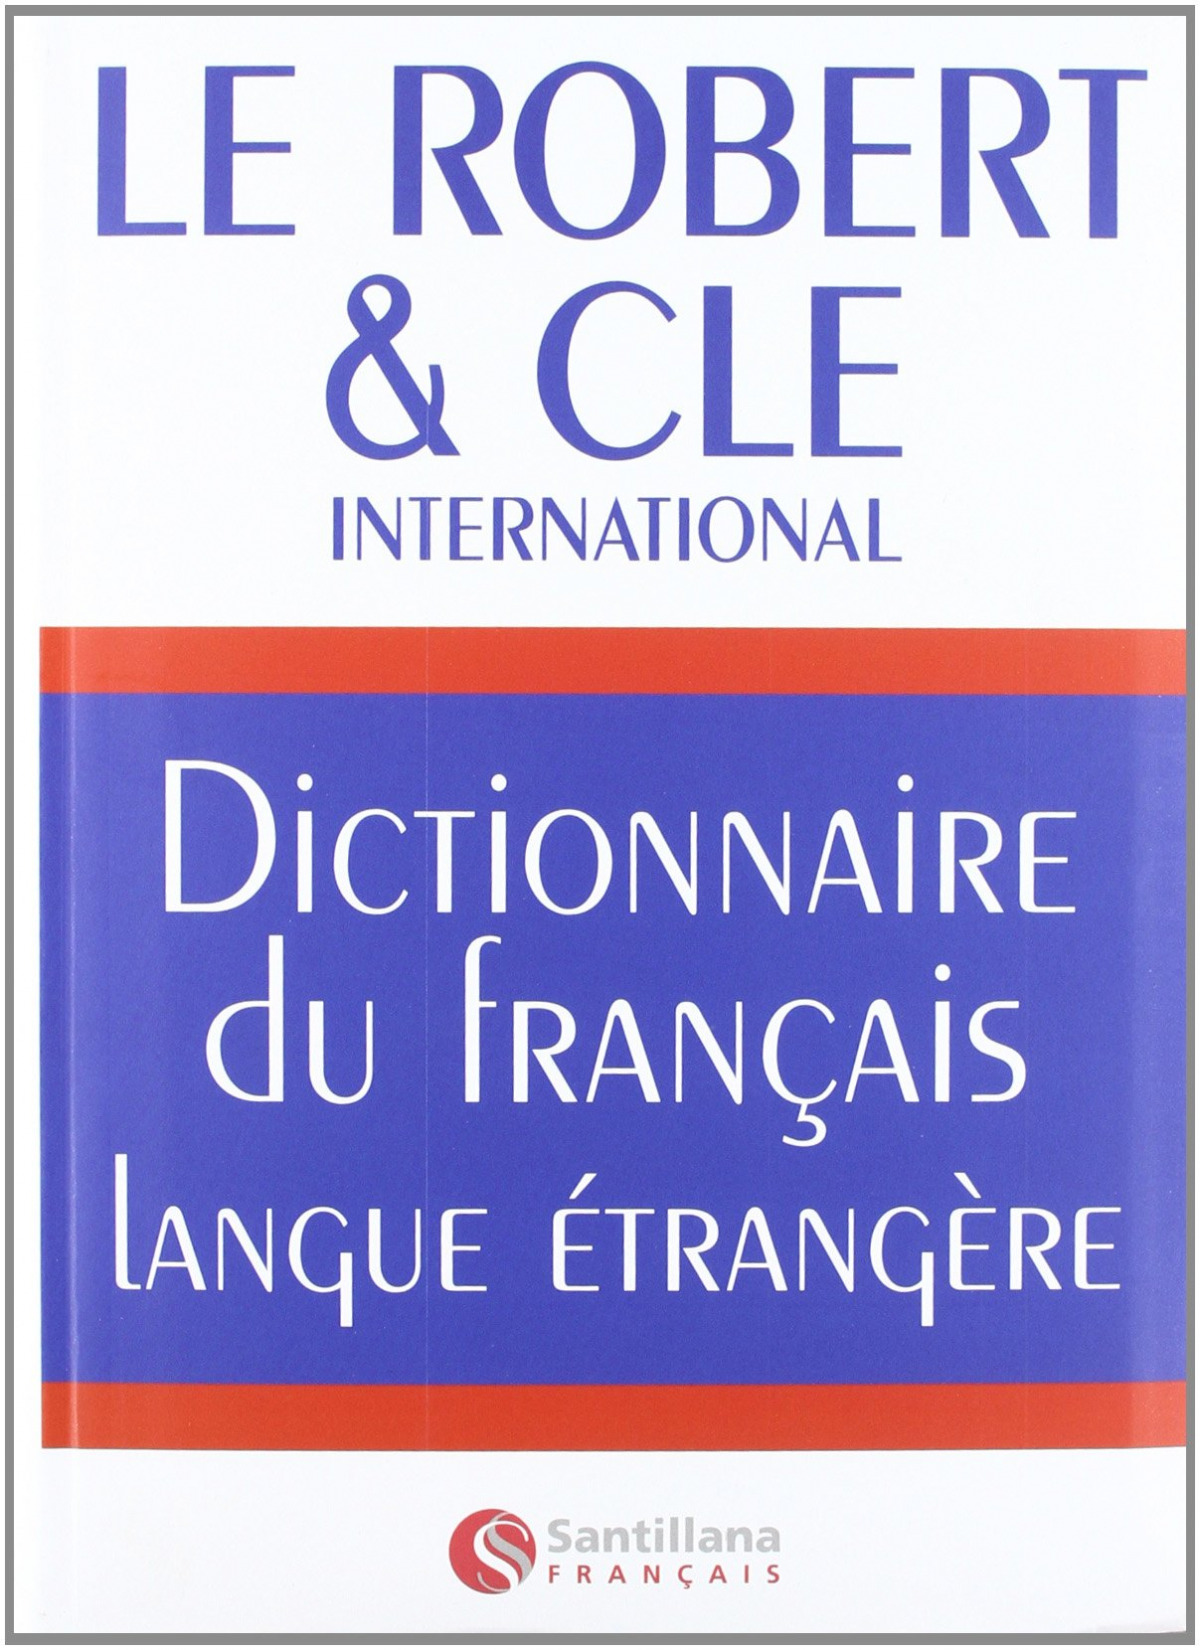 Dictionnaire du français langue etrangere - Varios autores